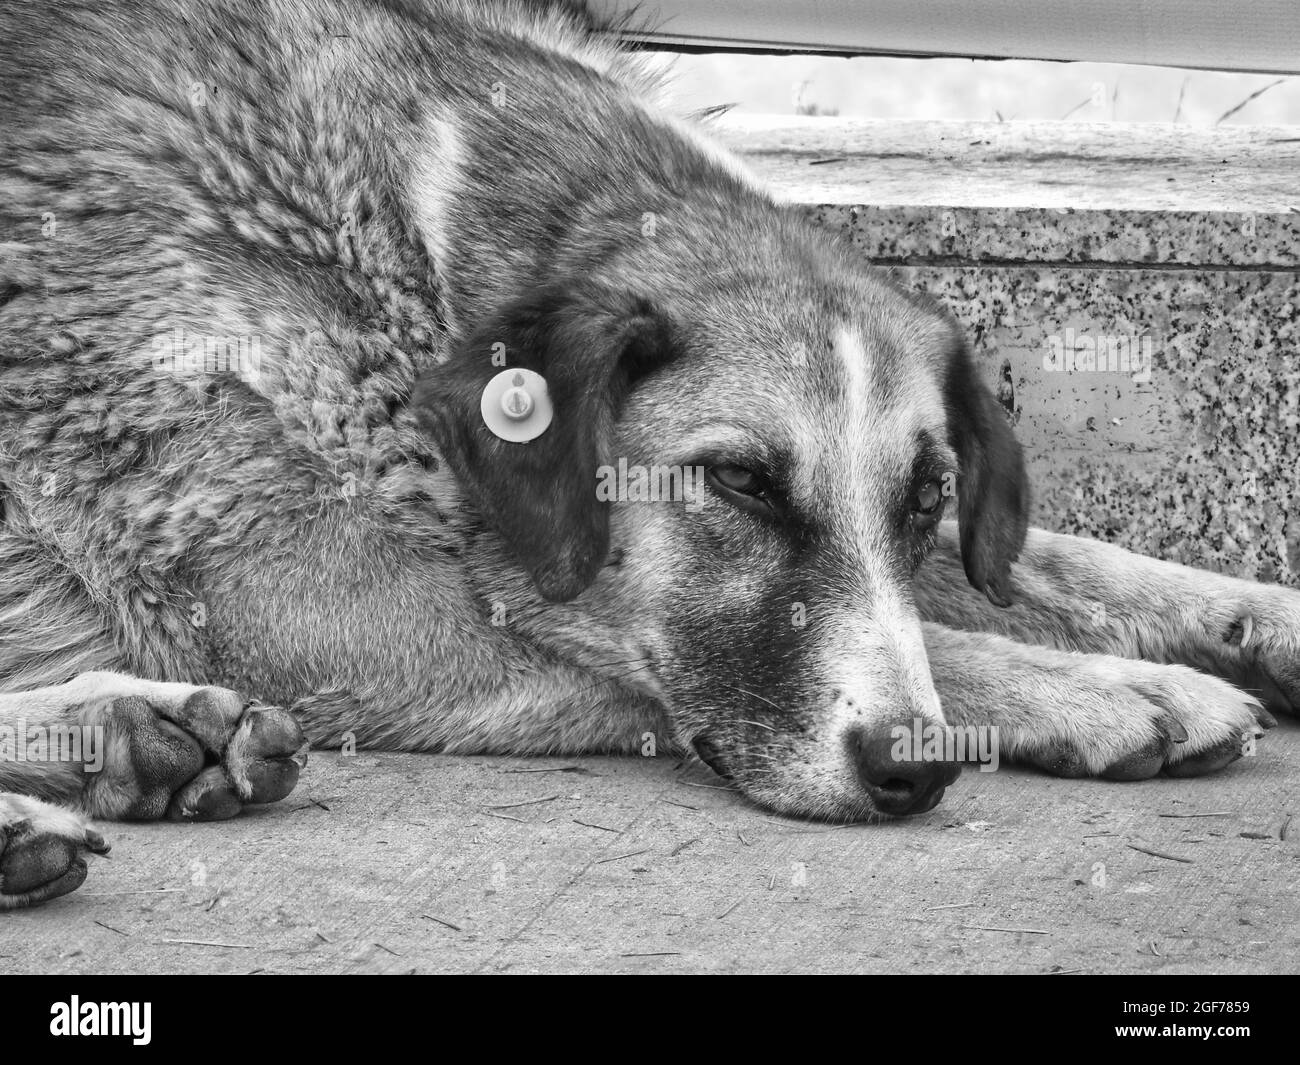 Scatto in scala di grigi di un cane triste che giace a terra Foto Stock